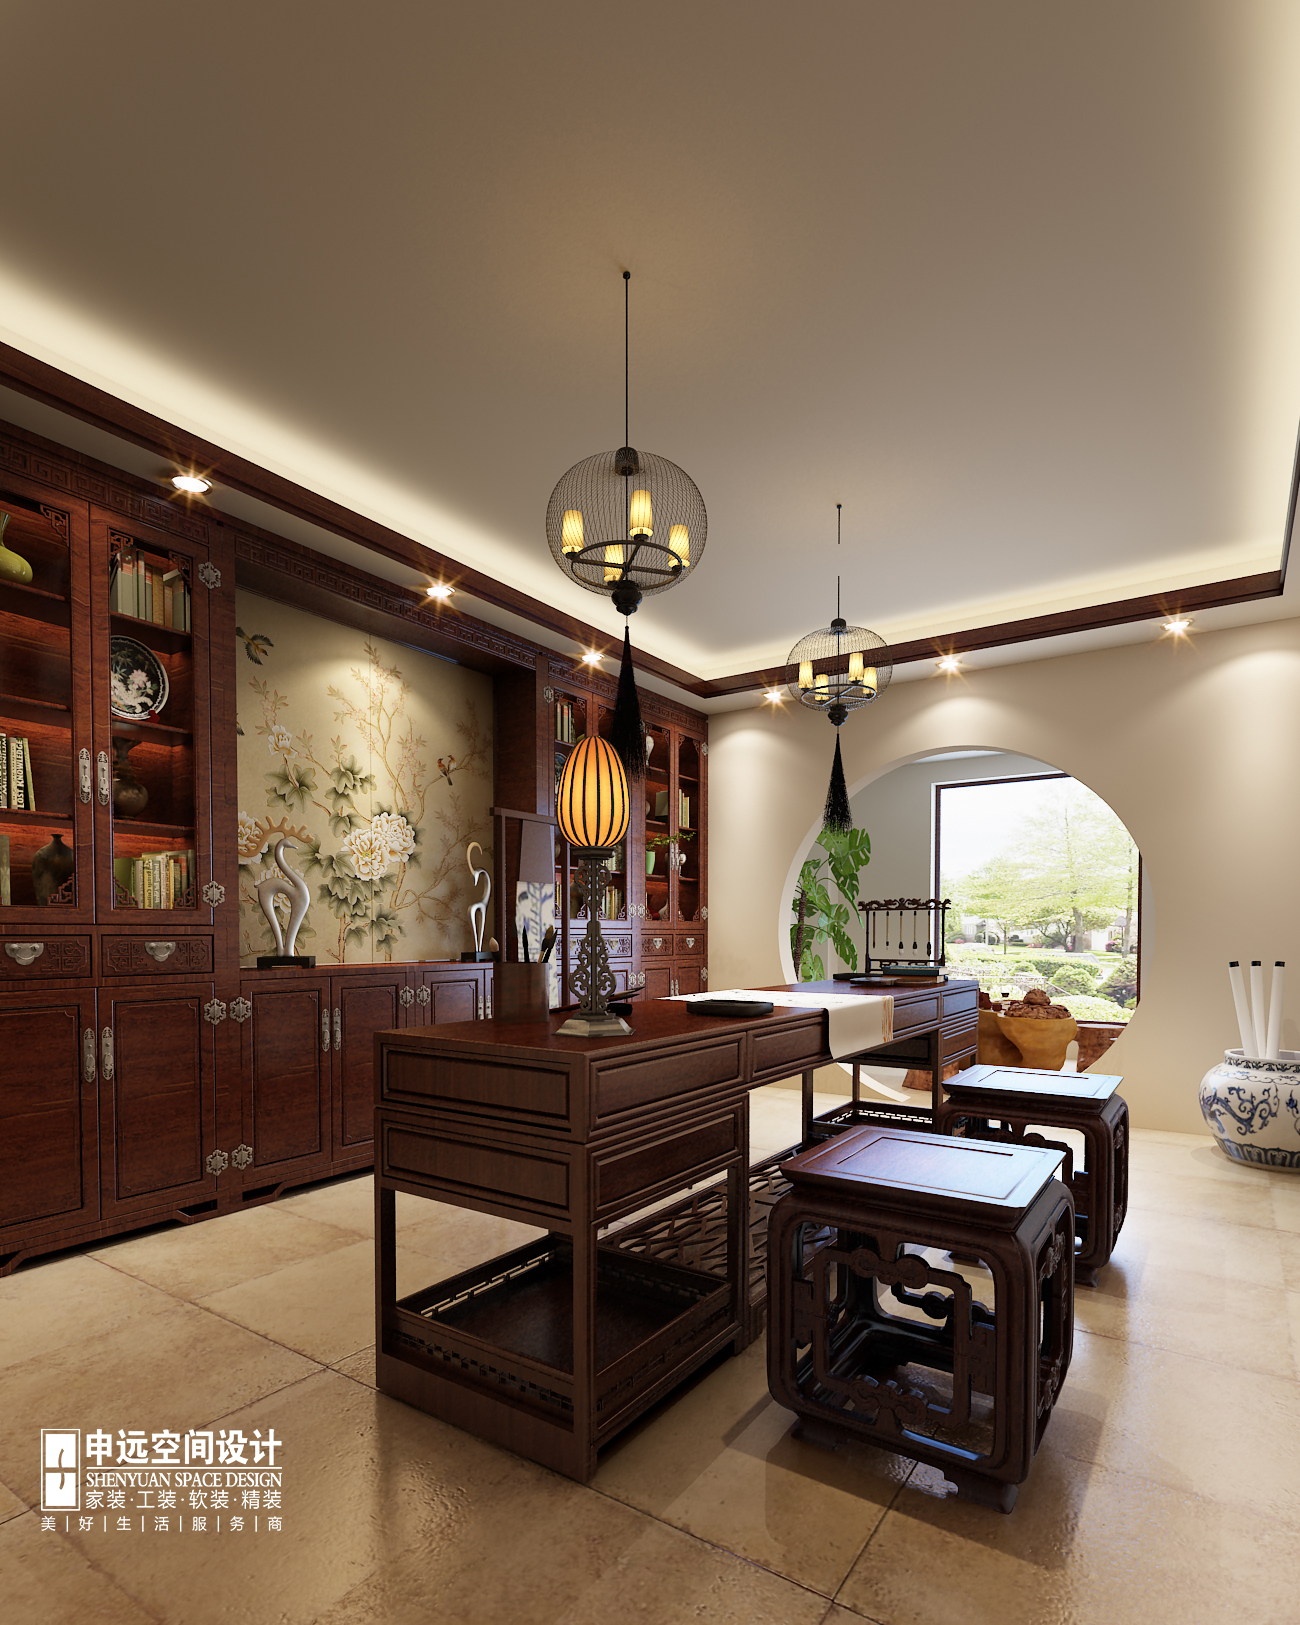 别墅 中式 古典别墅 申远 北京申远 书房图片来自申远空间设计北京分公司在北京申远-古典中式风格的分享